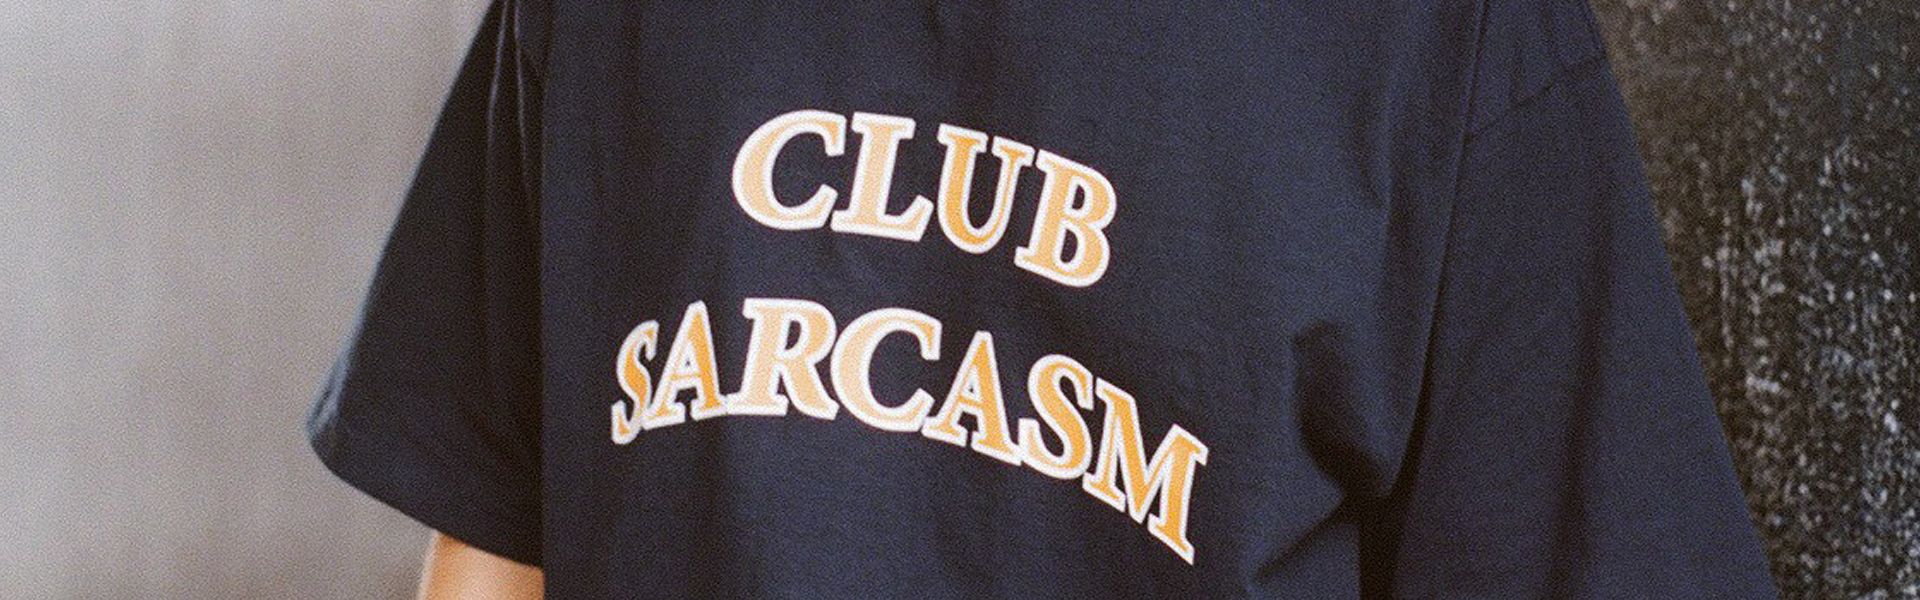 CLUB SRACASM